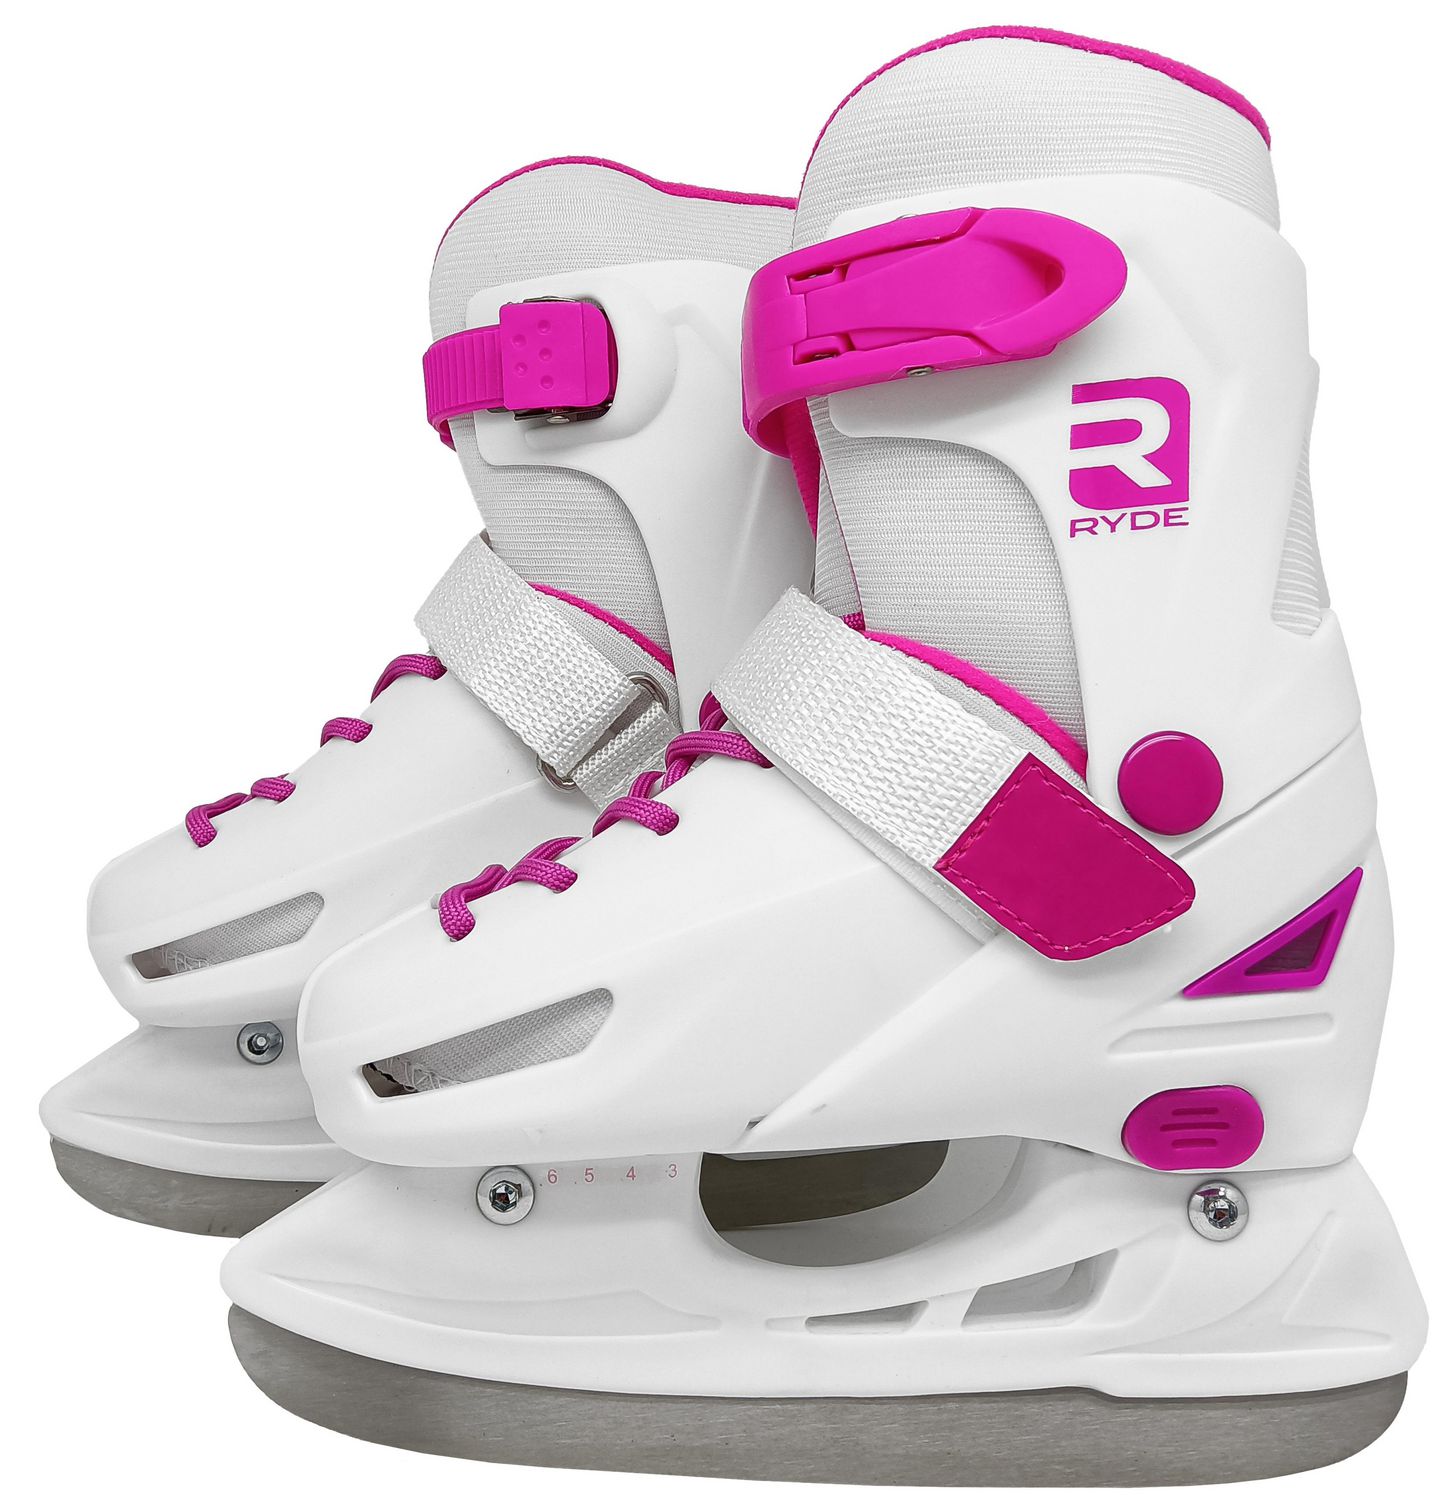 SOTFMAX S-95- patin à glace pour femme